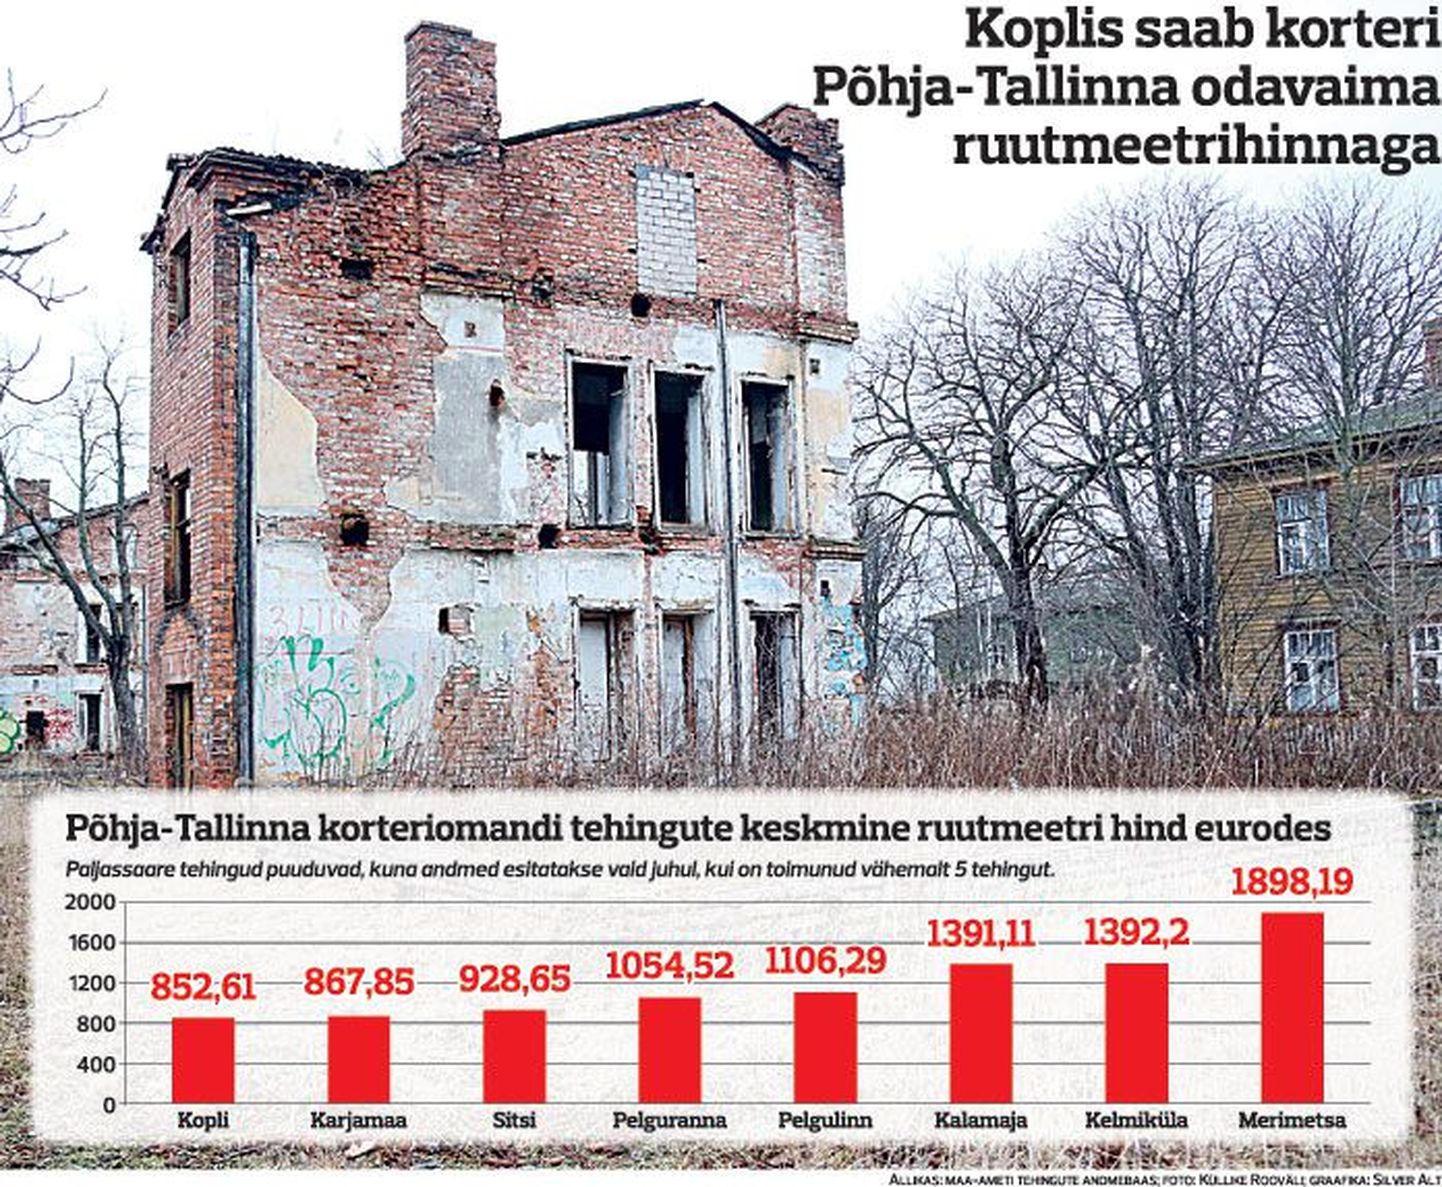 Koplis saab korteri Põhja-Tallinna odavaima hinnaga.